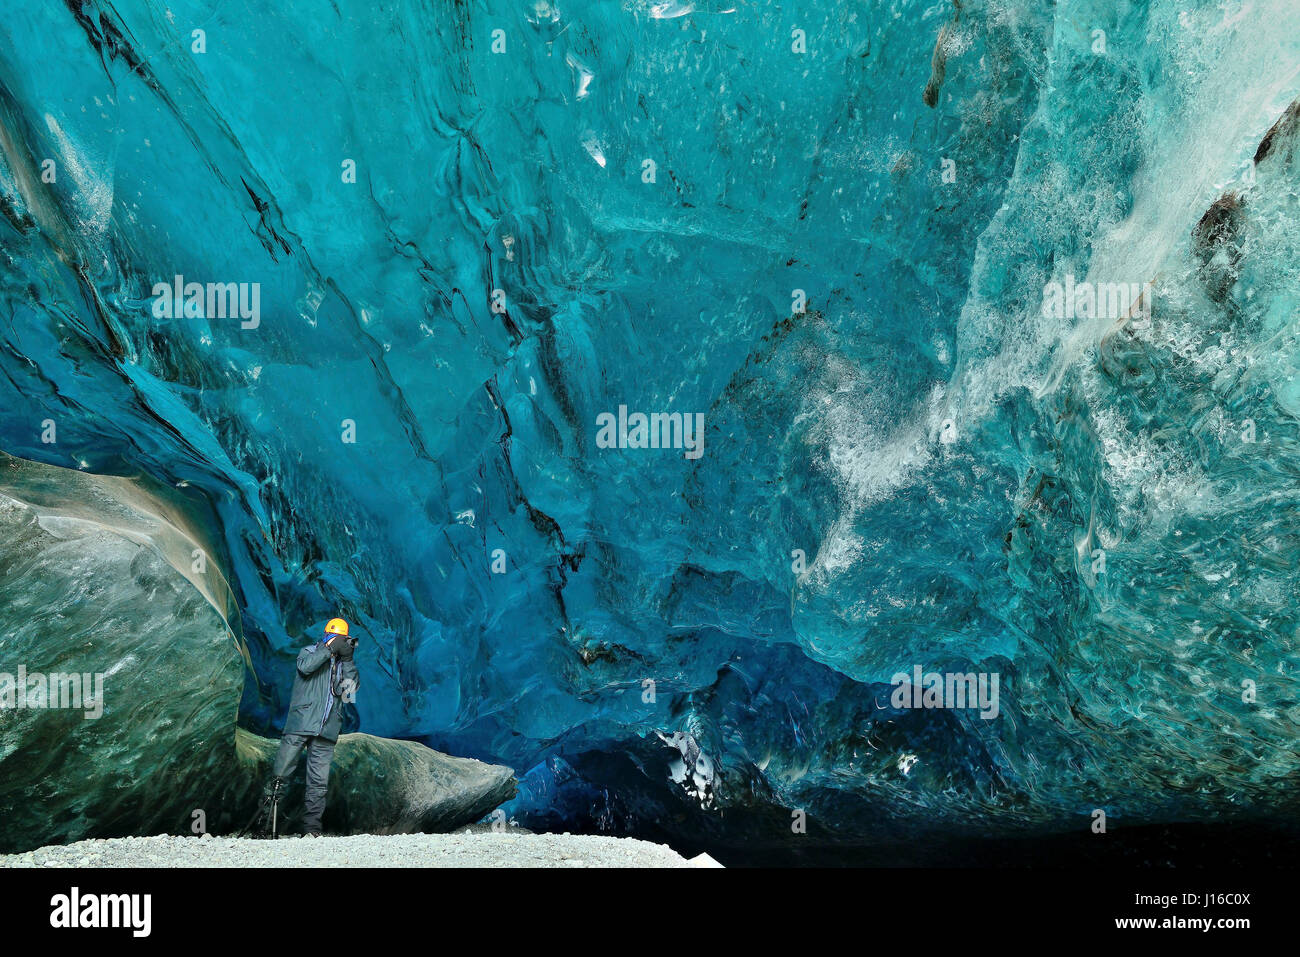 VATNAJOKULL, ISLANDE : un photographe britannique peut vous aider à explorer les 1000 ans de 400 pieds de long de la grotte de glace en cristal pour moins de £2K. Les images montrent comment une équipe britannique de photographes nature explore les 25 pieds de haut dans la grotte de glace immaculée du glacier de Vatnajokull Islande, qui scintille de tous les frosty gloire d'un véritable enfers hiver. D'autres photos montrent l'équipe britannique à Breiðamerkursandur, la glace à la plage, où un mini-icebergs sont rejetés sur le rivage. Auteur : MARK ANDREAS JONES / MÉDIAS MONDE TAMBOUR Banque D'Images